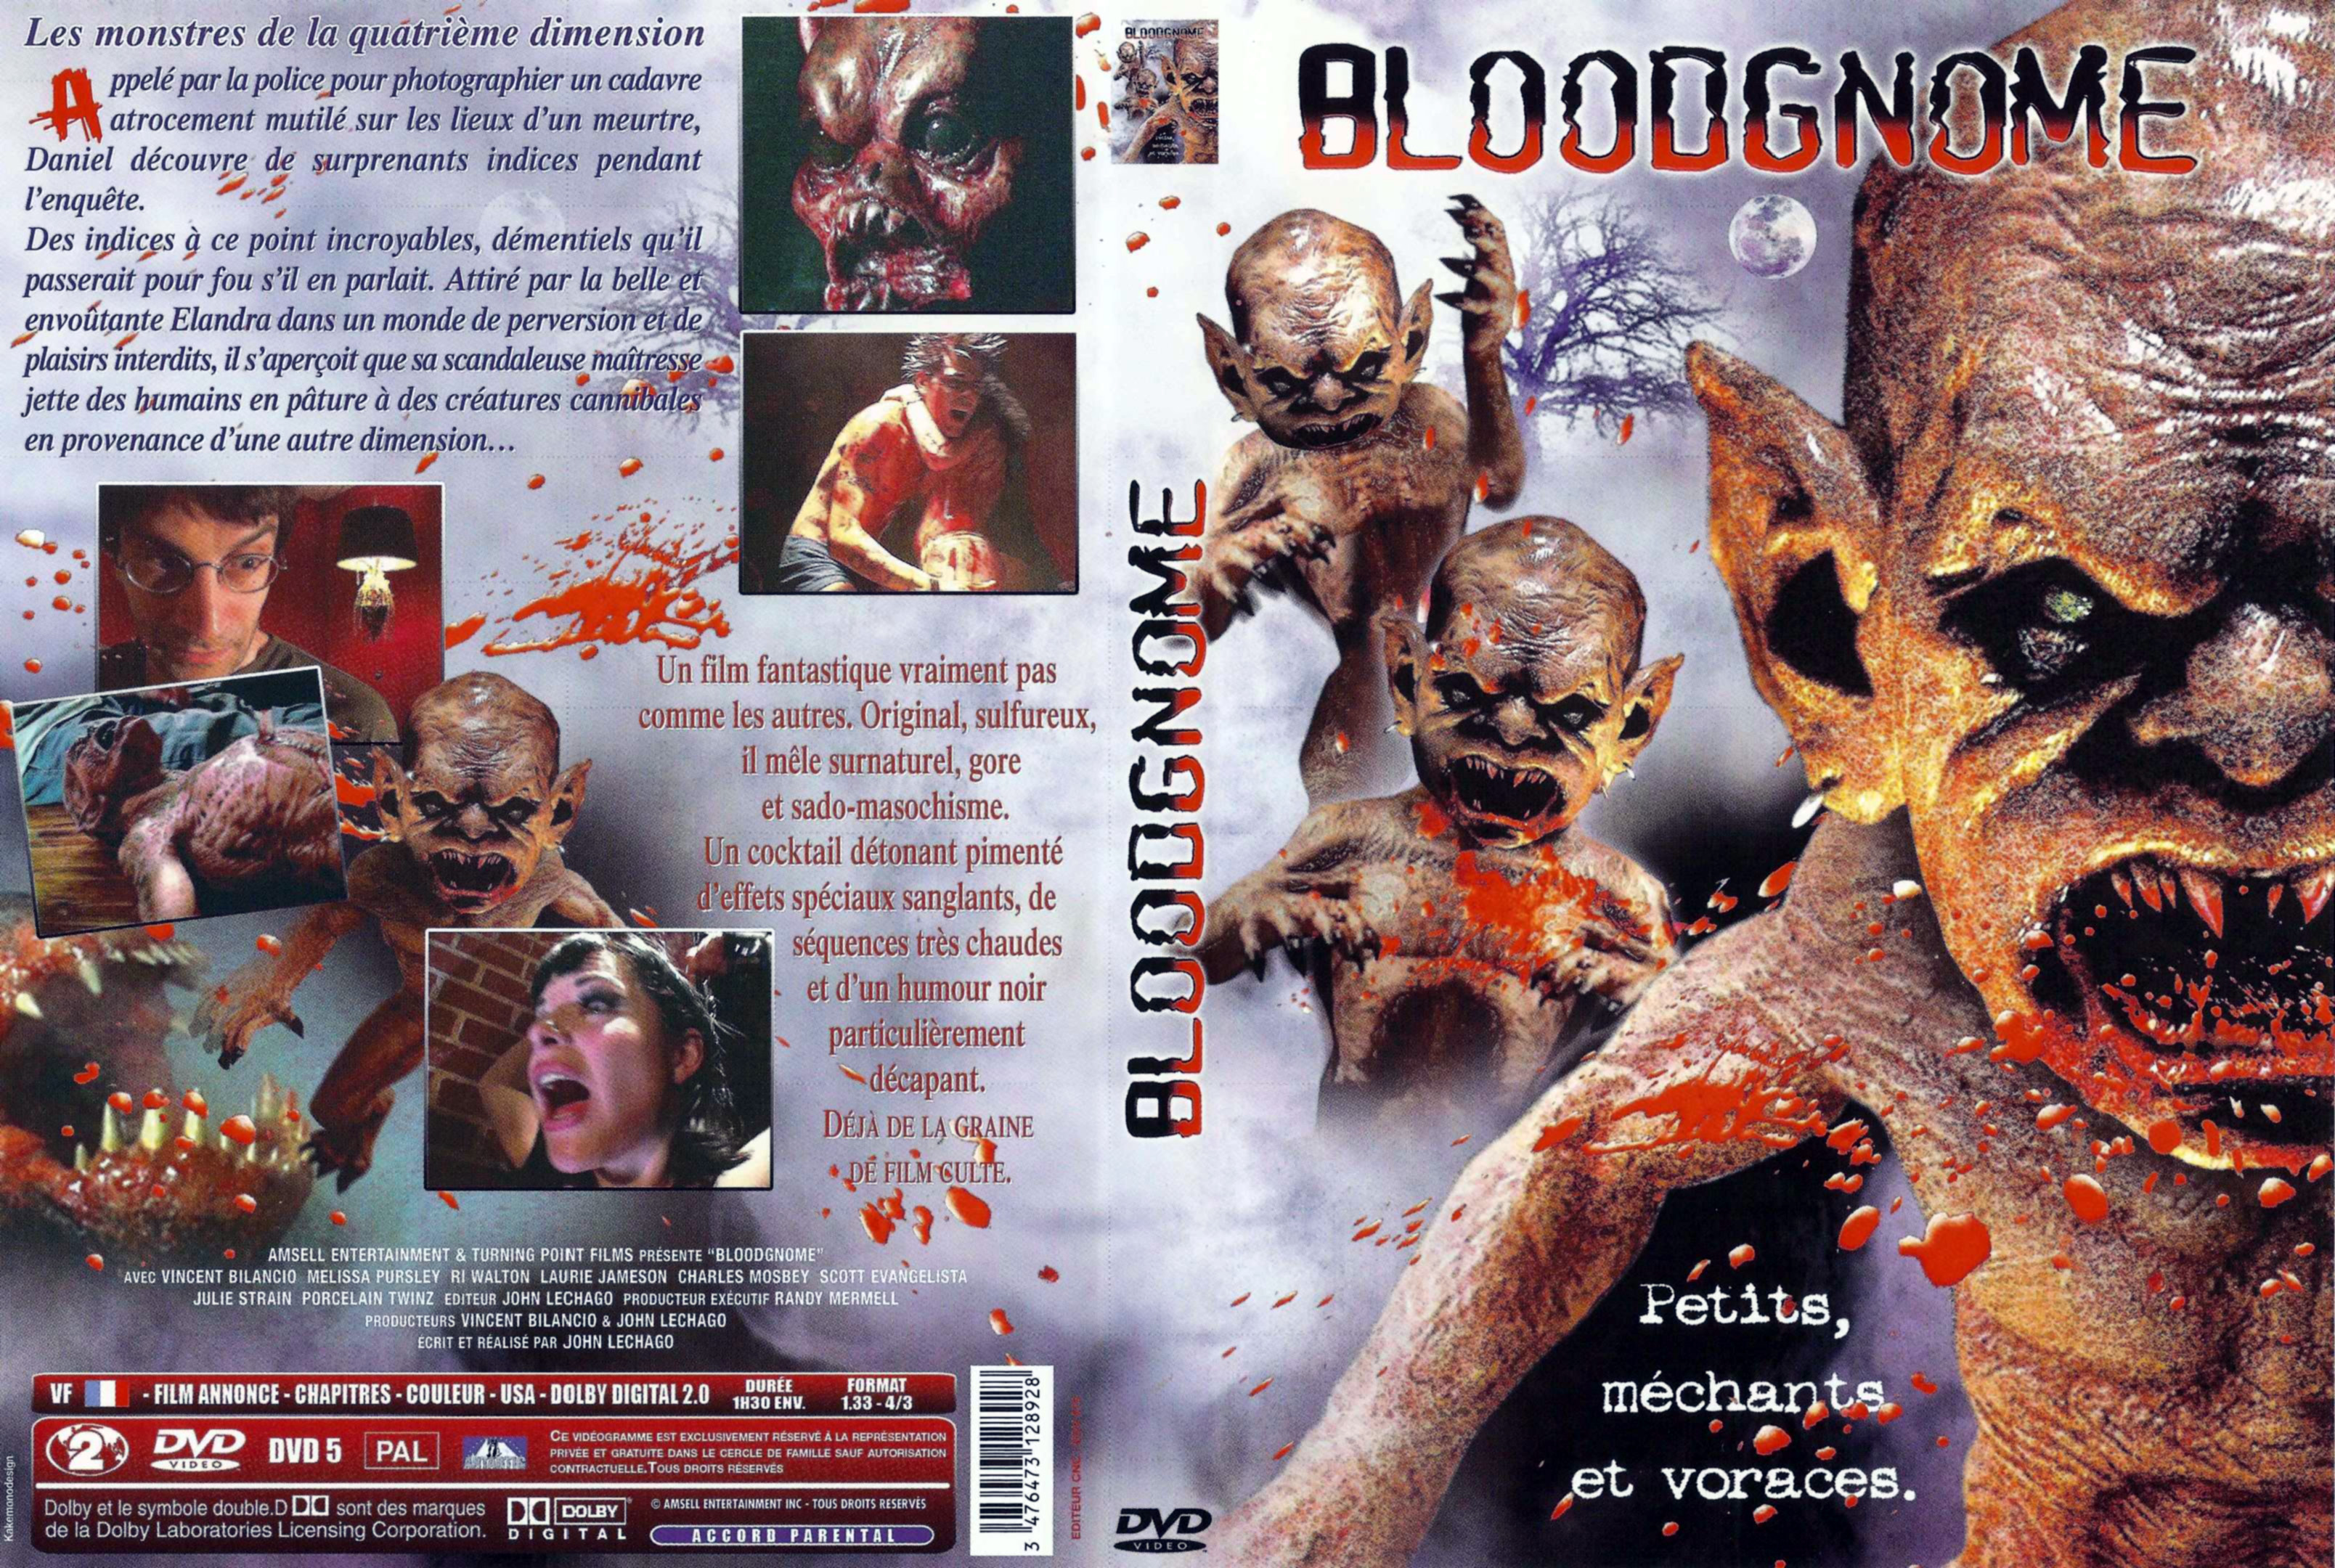 Jaquette DVD Bloodgnome